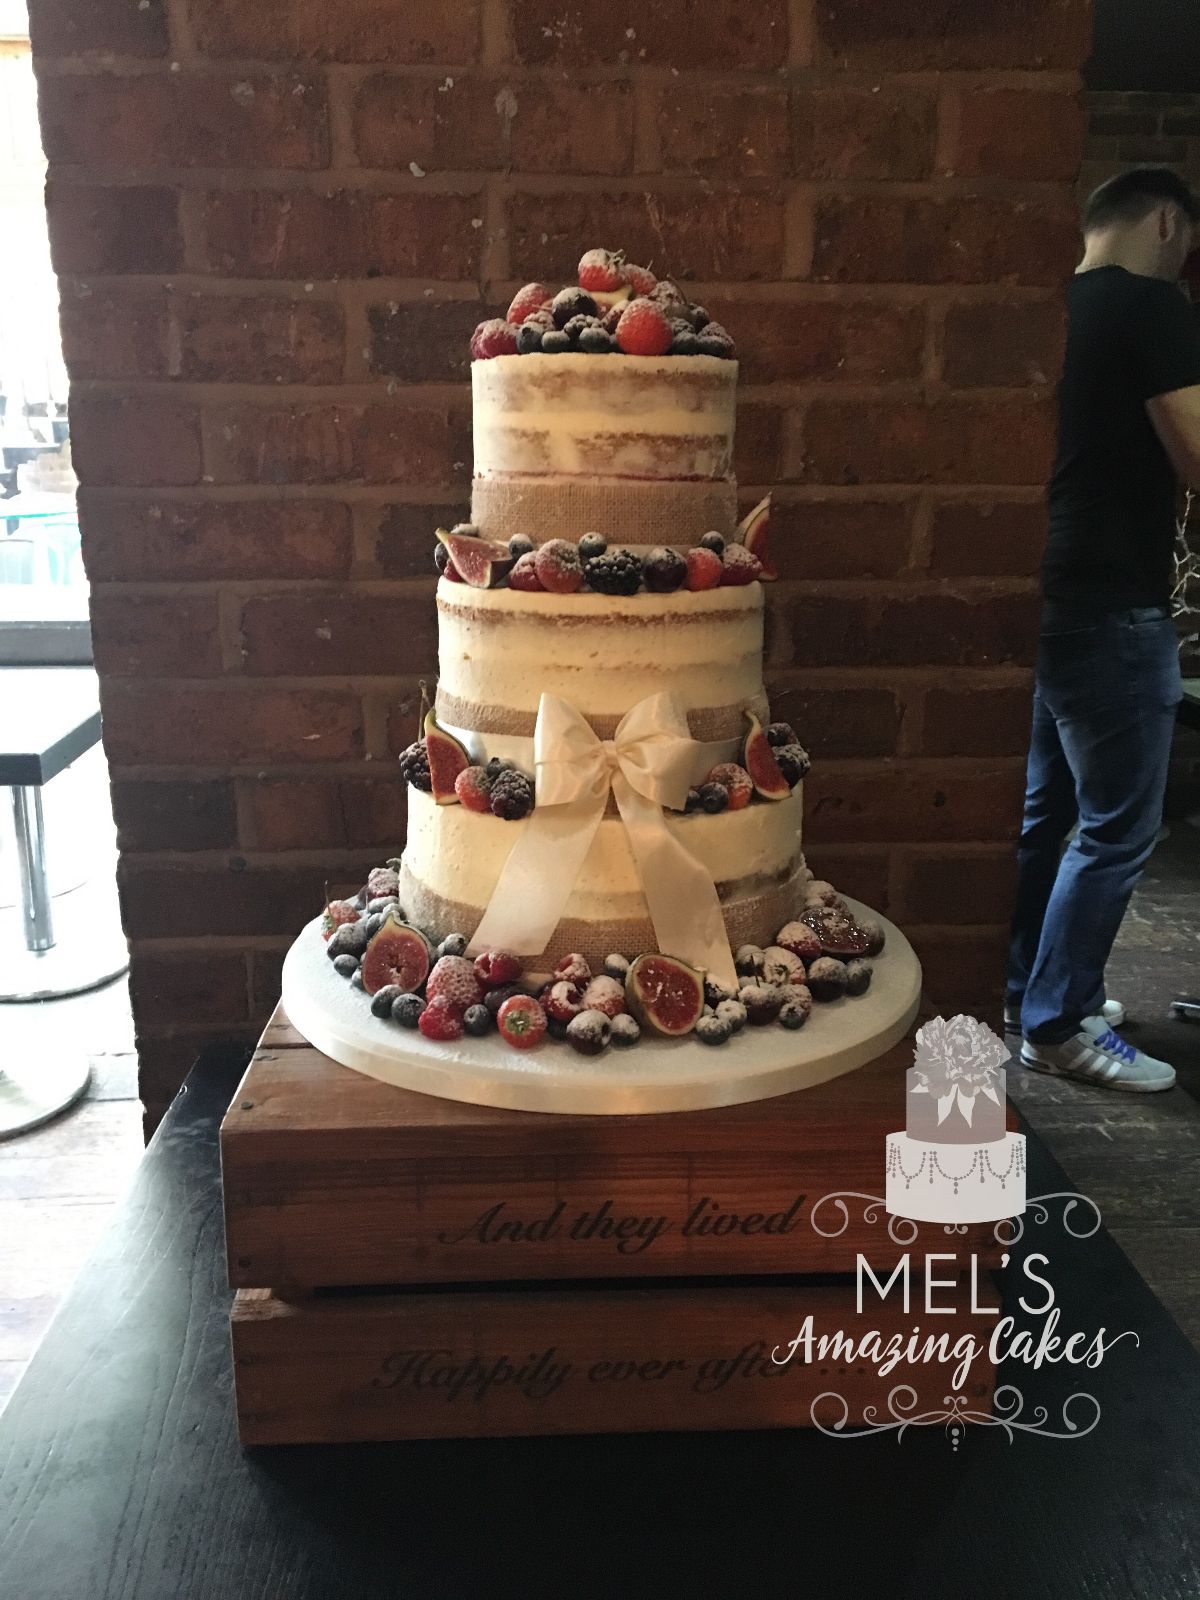 Mel's Amazing Cakes-Image-92